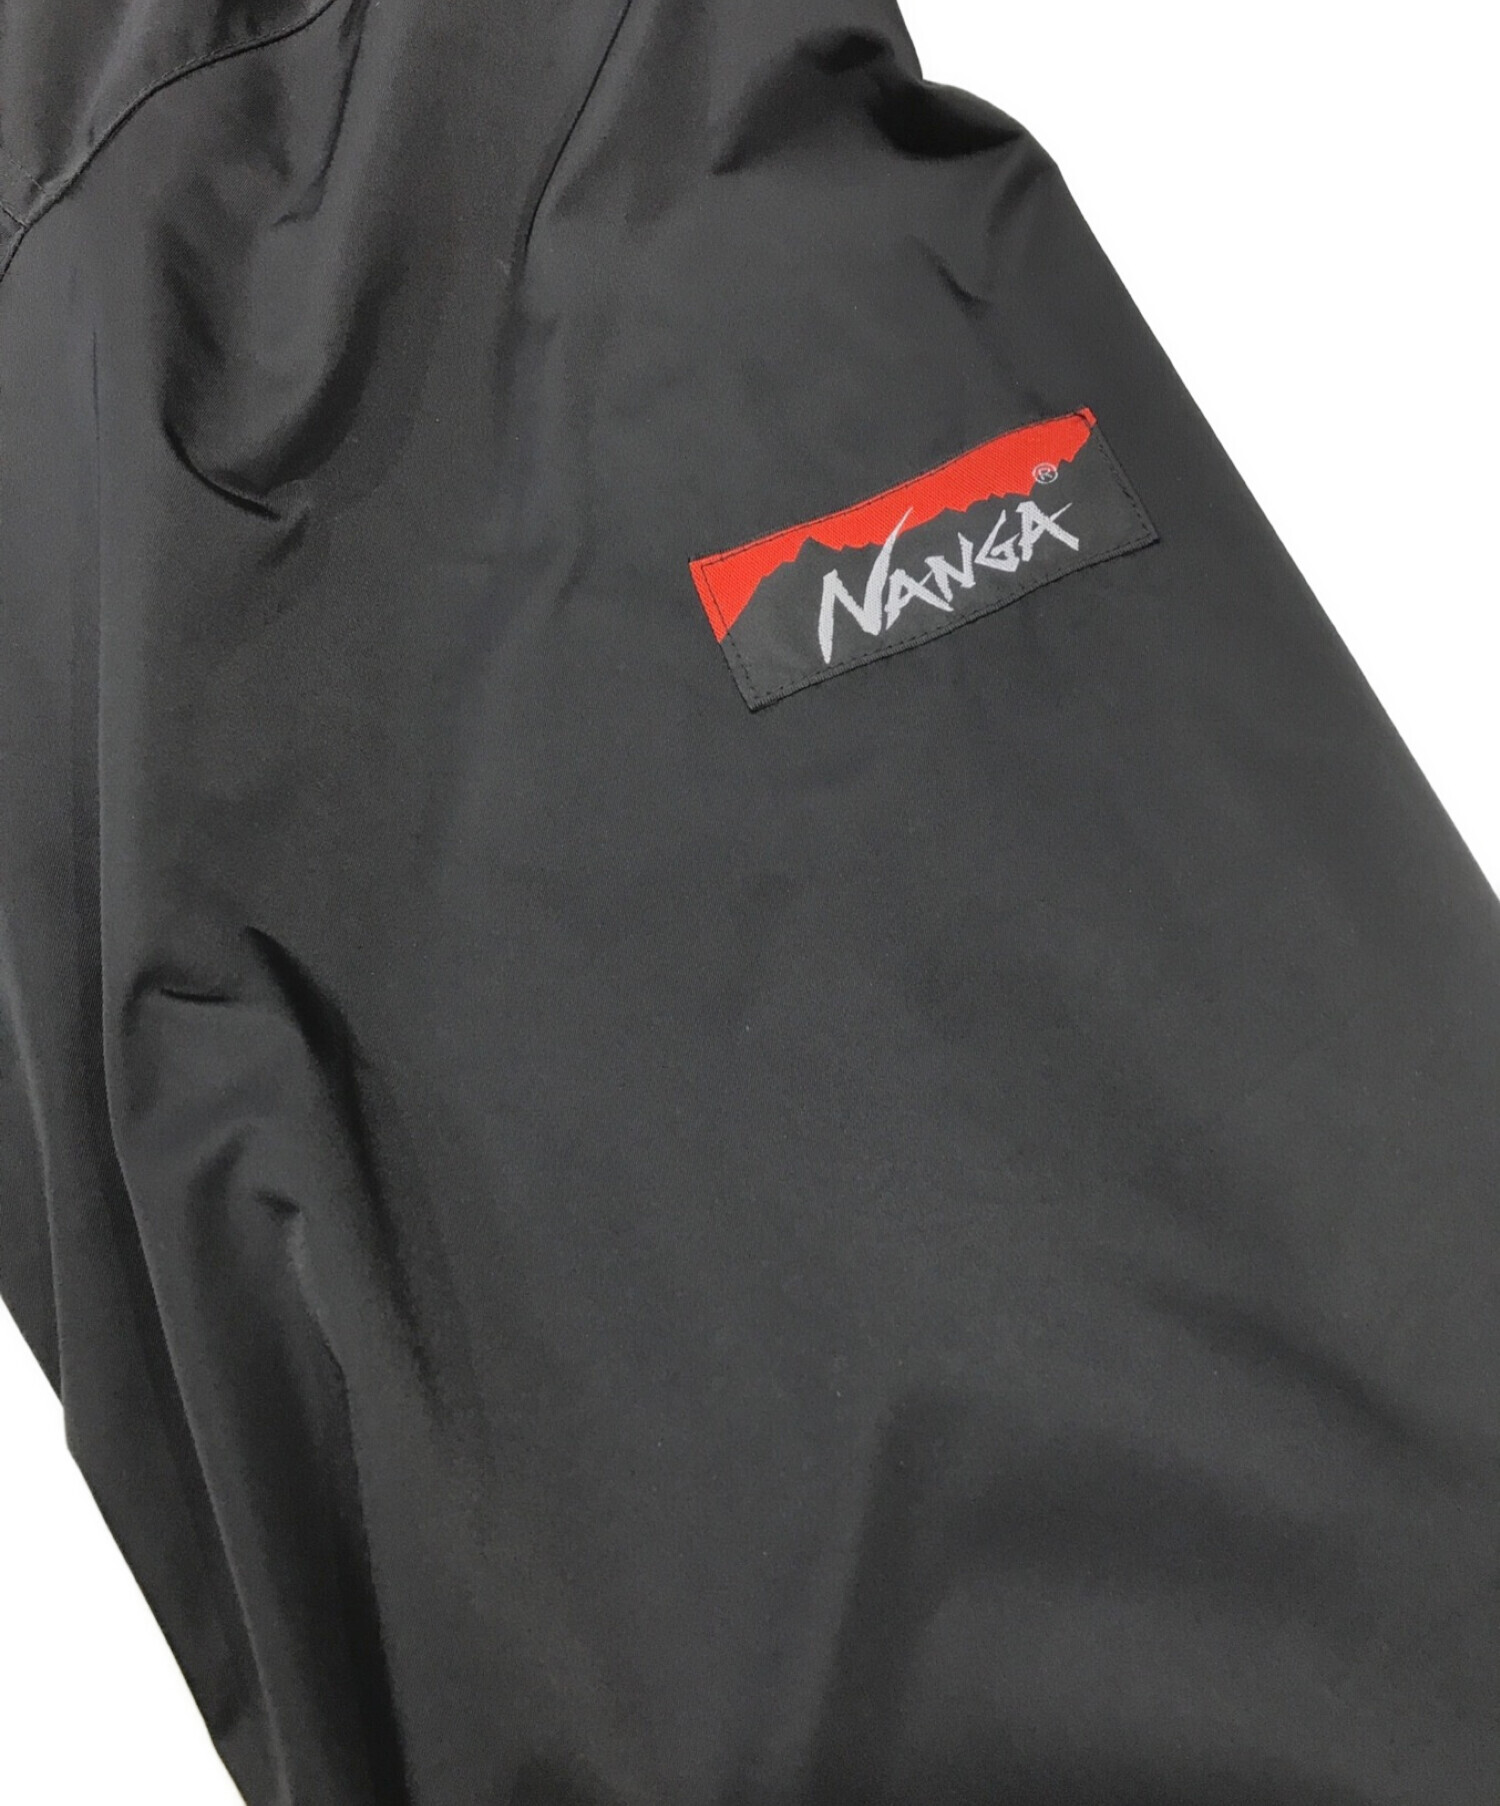 WACKO MARIA (ワコマリア) NANGA (ナンガ) MOUNTAIN PARKA コラボマウンテンパーカー ブラック サイズ:L